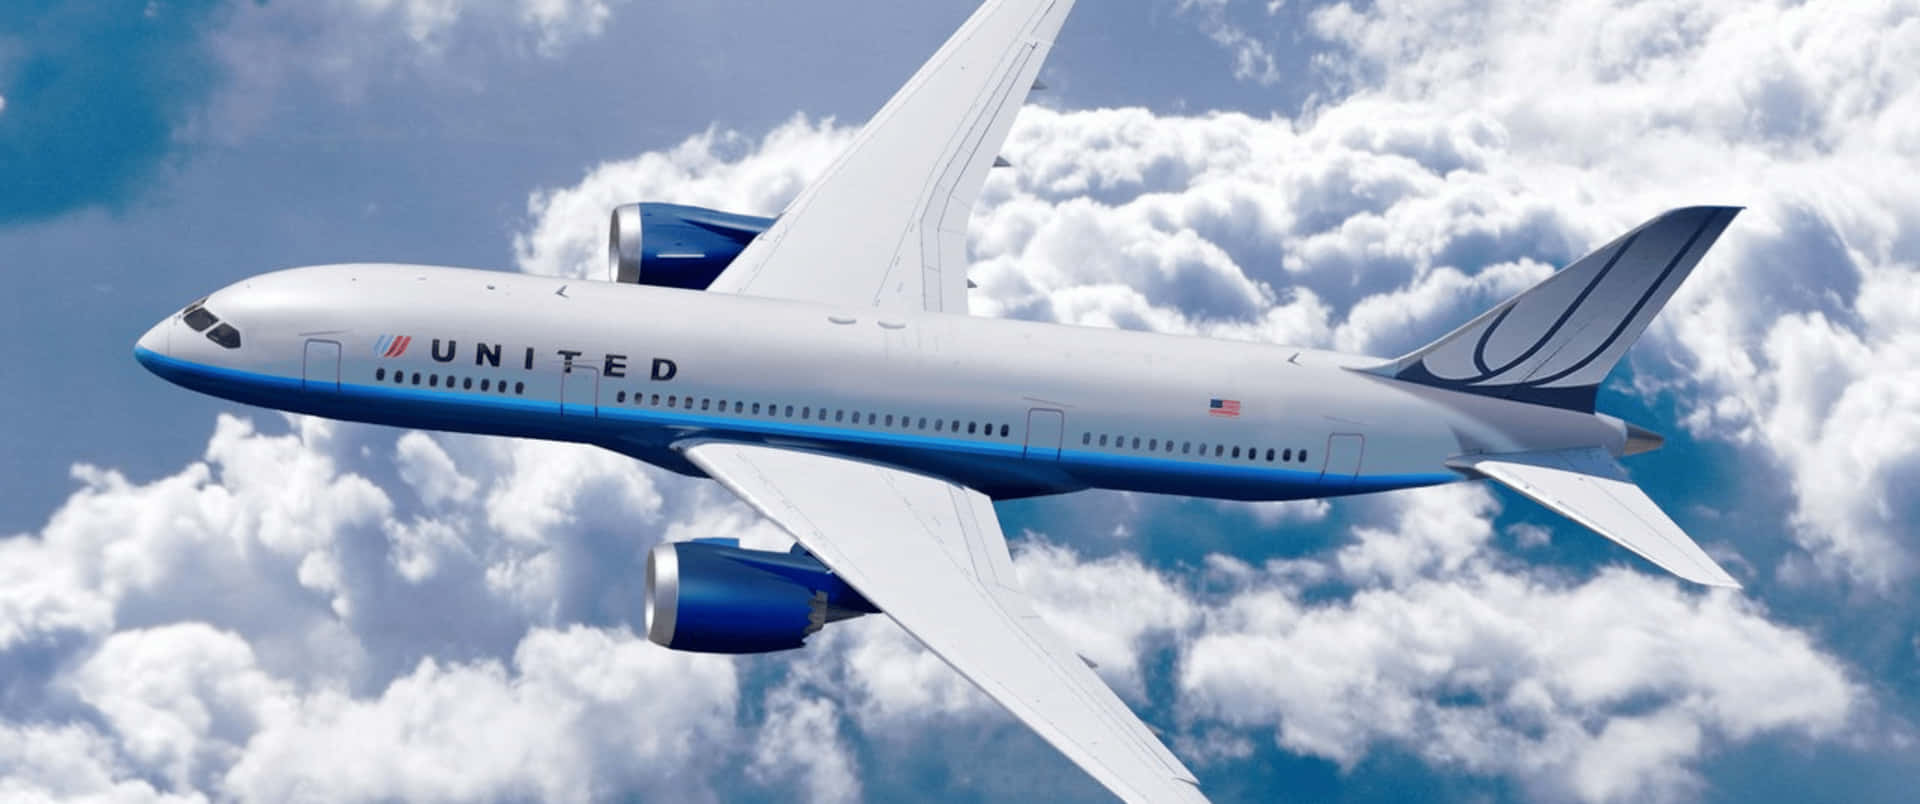 3440x1440pbakgrundsbild Med Flygplan Från United Airlines.